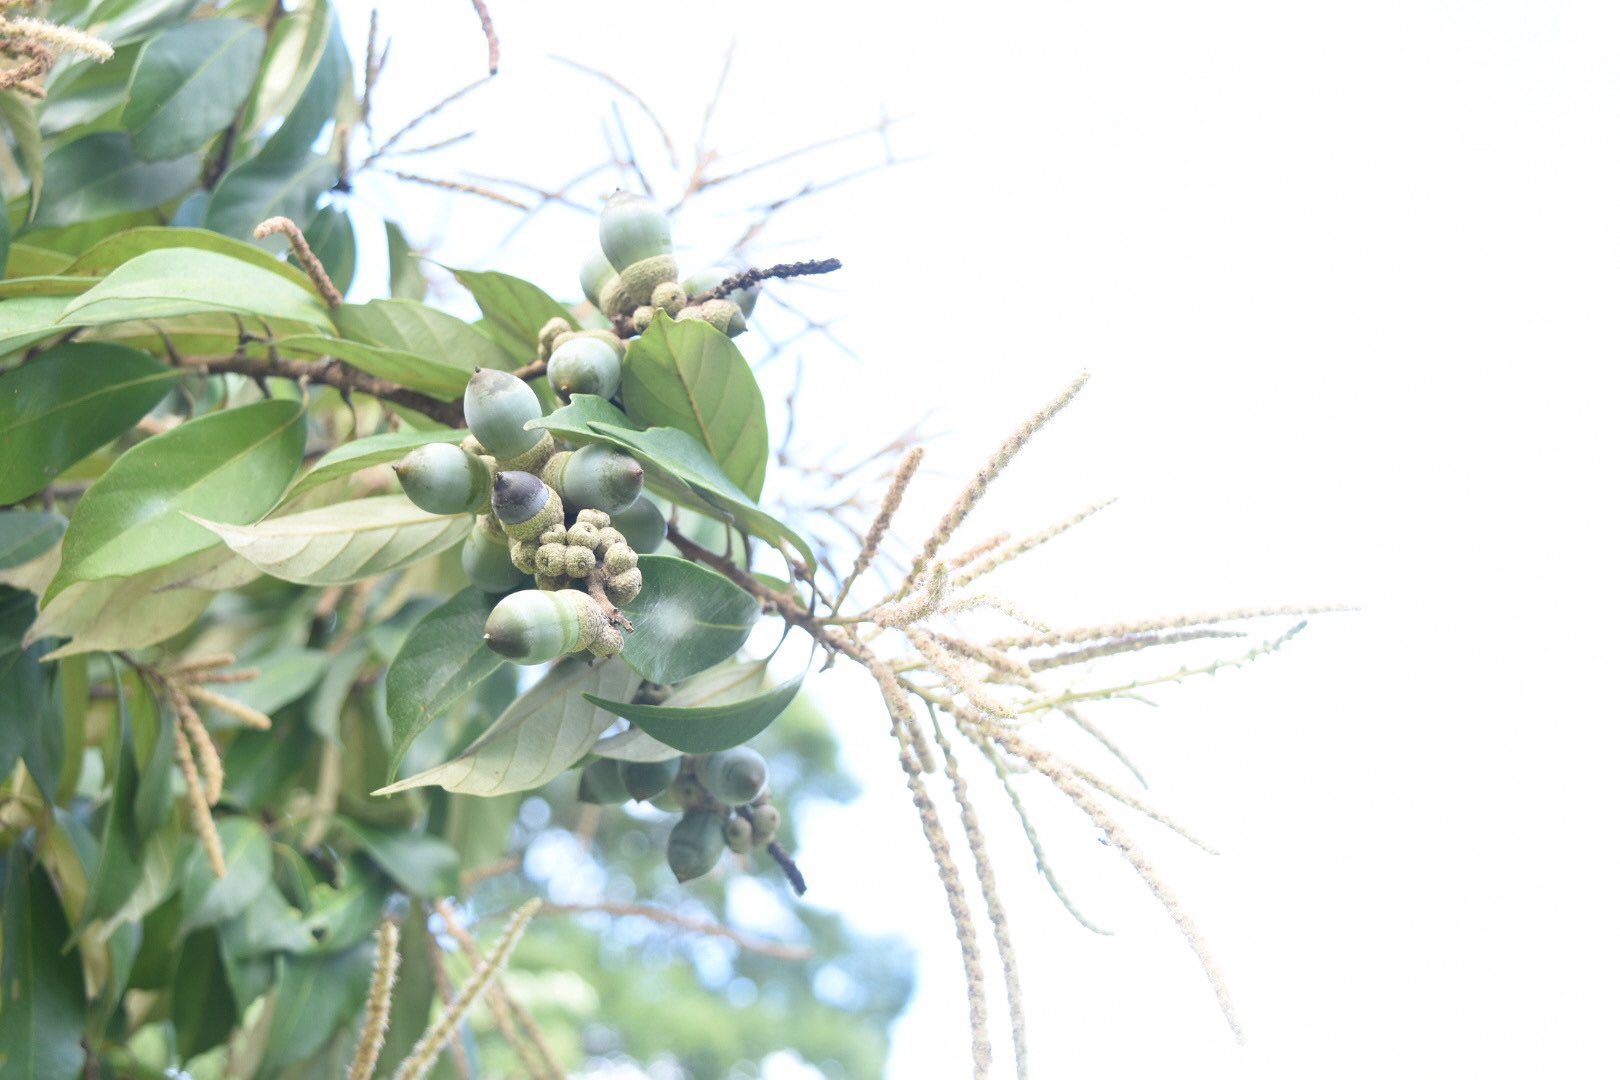 公式 京都府立植物園 独特な香りを放ちながら シリブカガシ が開花してます ドングリ の成る樹木では珍しく秋咲きで 昨年のドングリが実ってきているのを花と同時に見られるのが特徴です アクが少なく食べられるドングリとしても貴重 この ドングリの